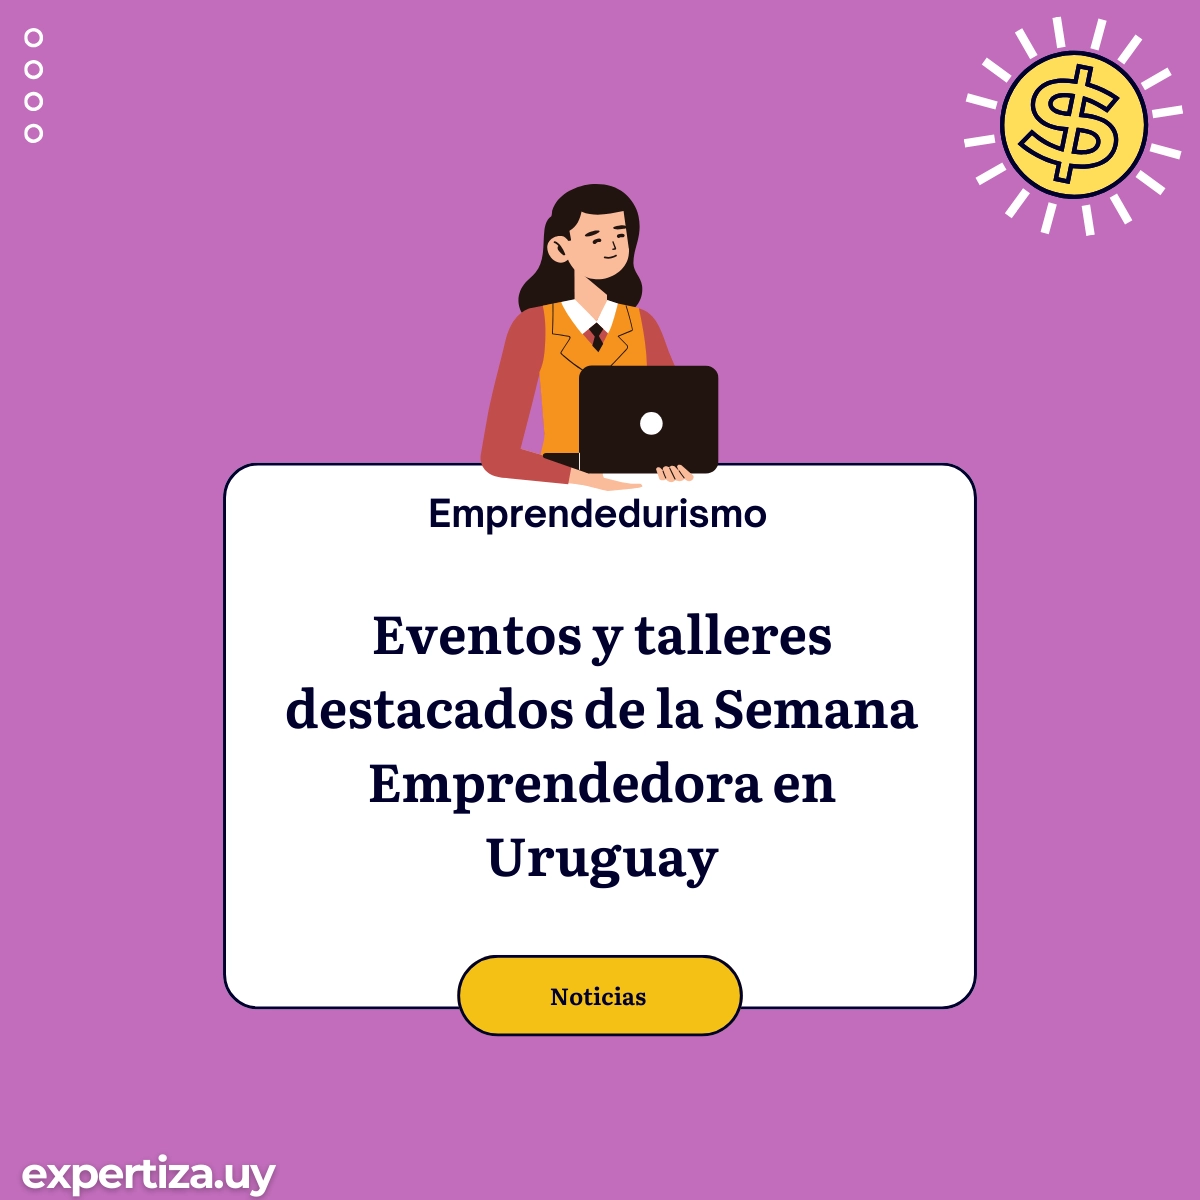 Semana Emprendedora en Uruguay.